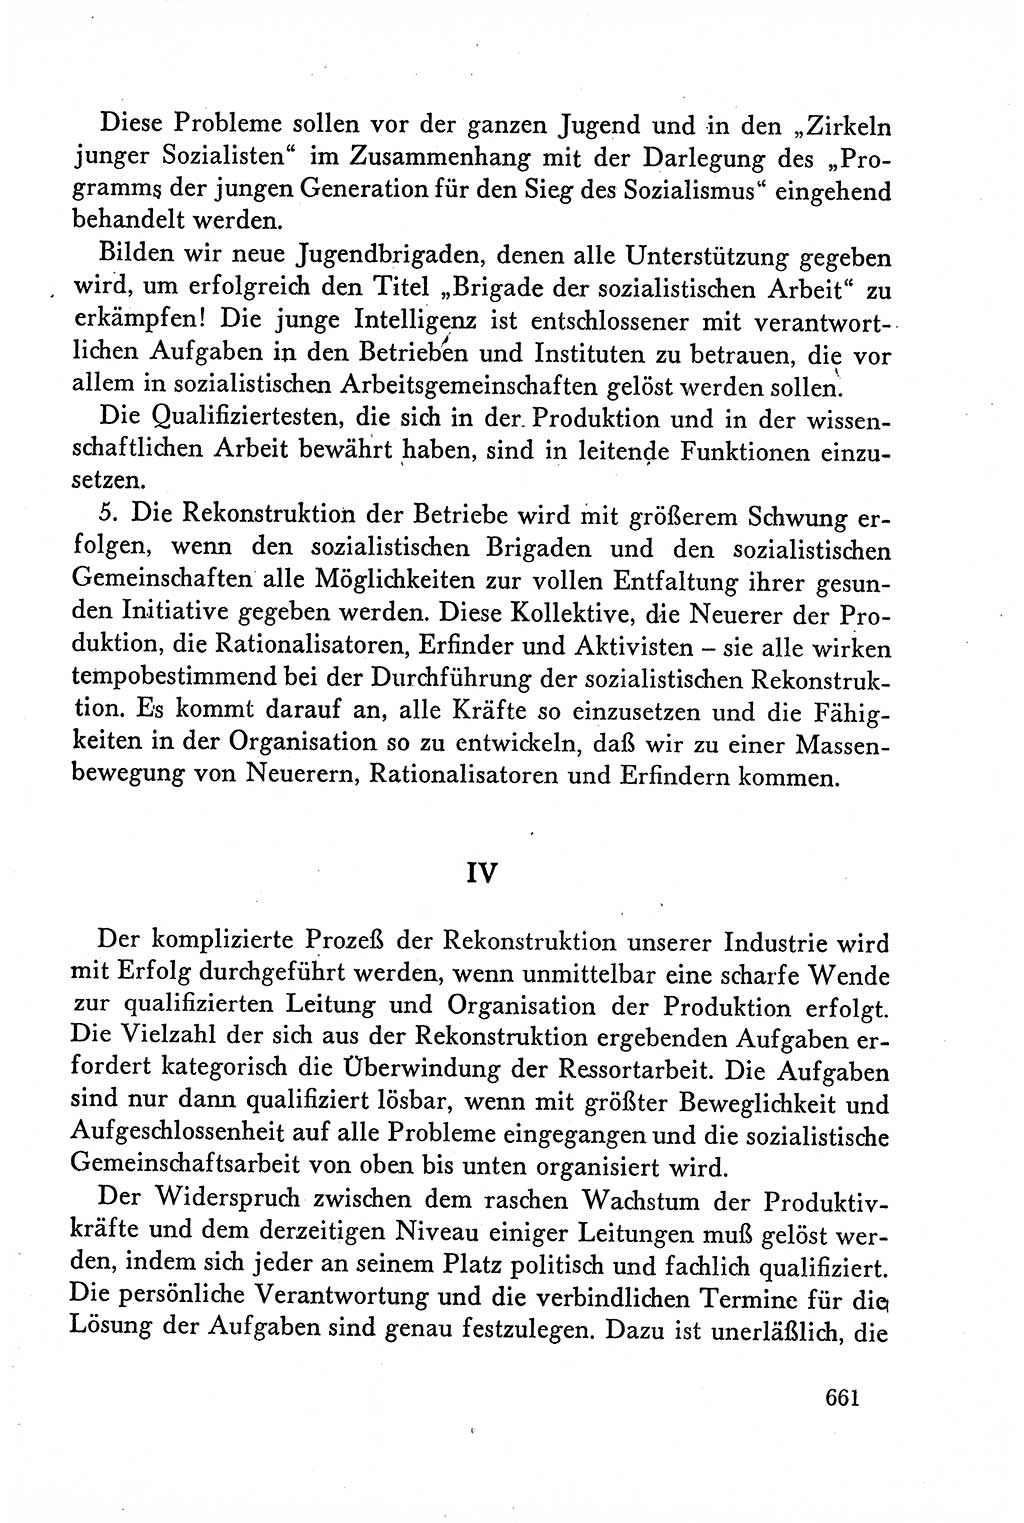 Dokumente der Sozialistischen Einheitspartei Deutschlands (SED) [Deutsche Demokratische Republik (DDR)] 1958-1959, Seite 661 (Dok. SED DDR 1958-1959, S. 661)